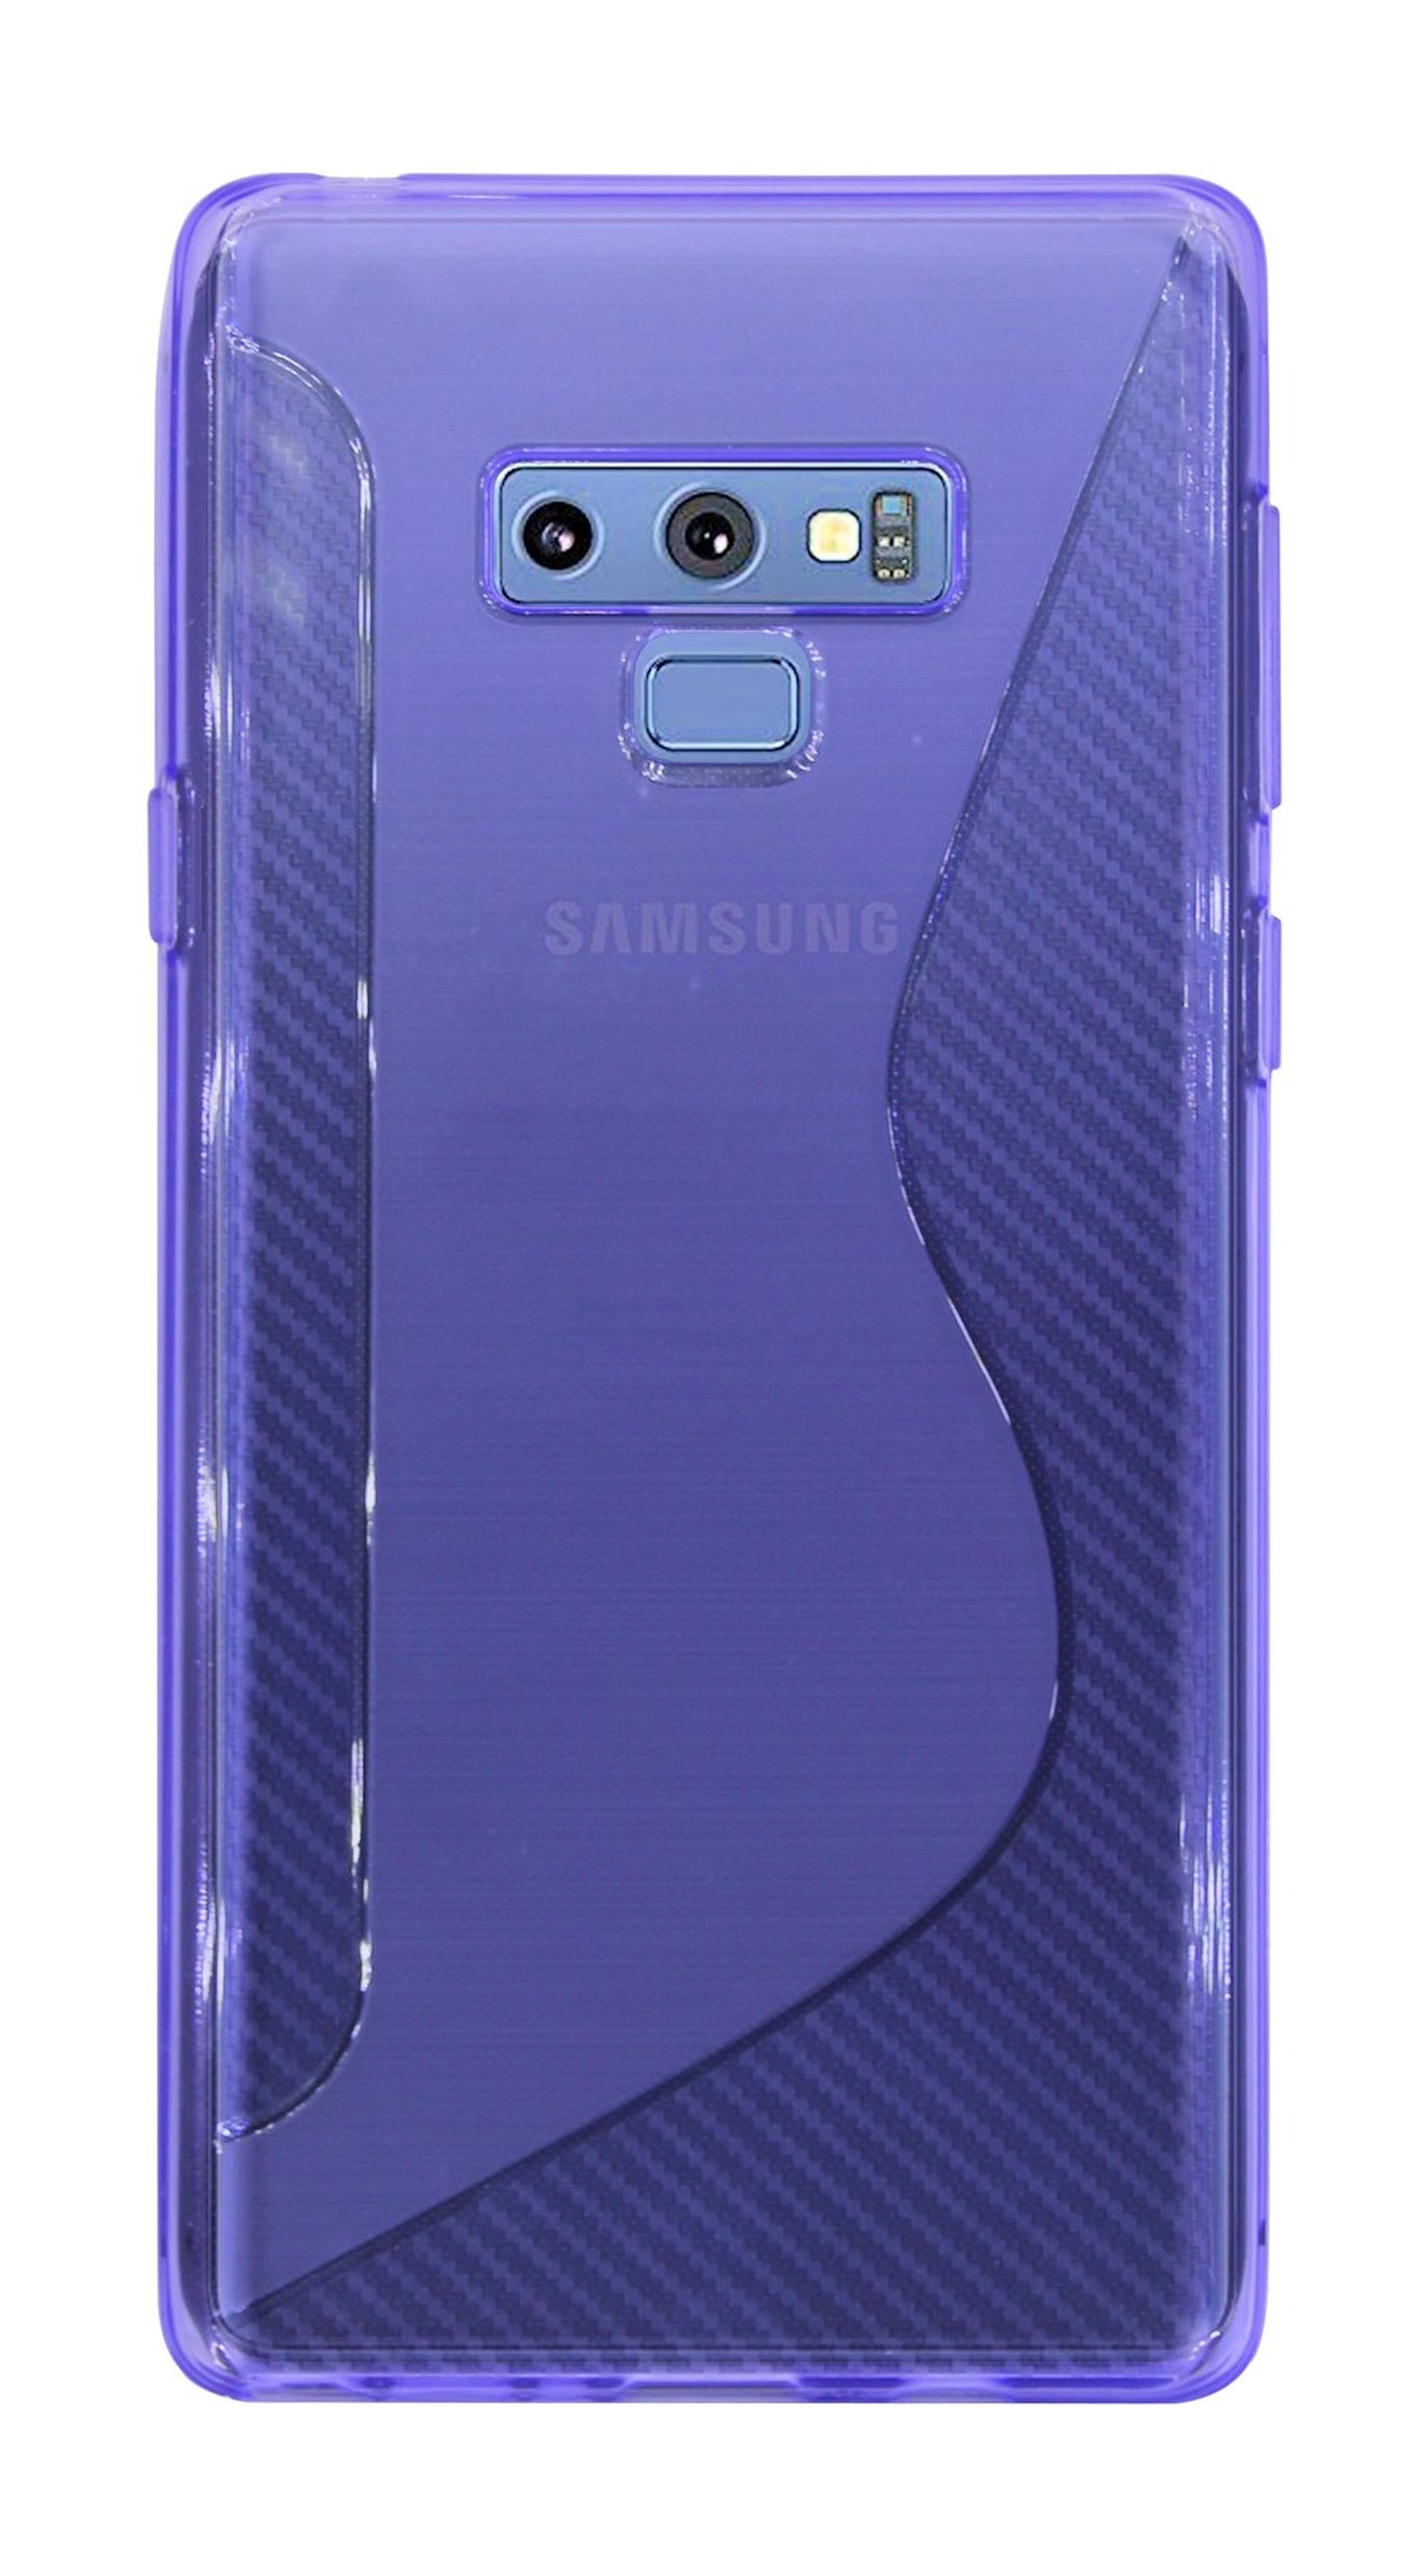 9, Note S-Line COFI Violett Cover, Bumper, Galaxy Samsung,